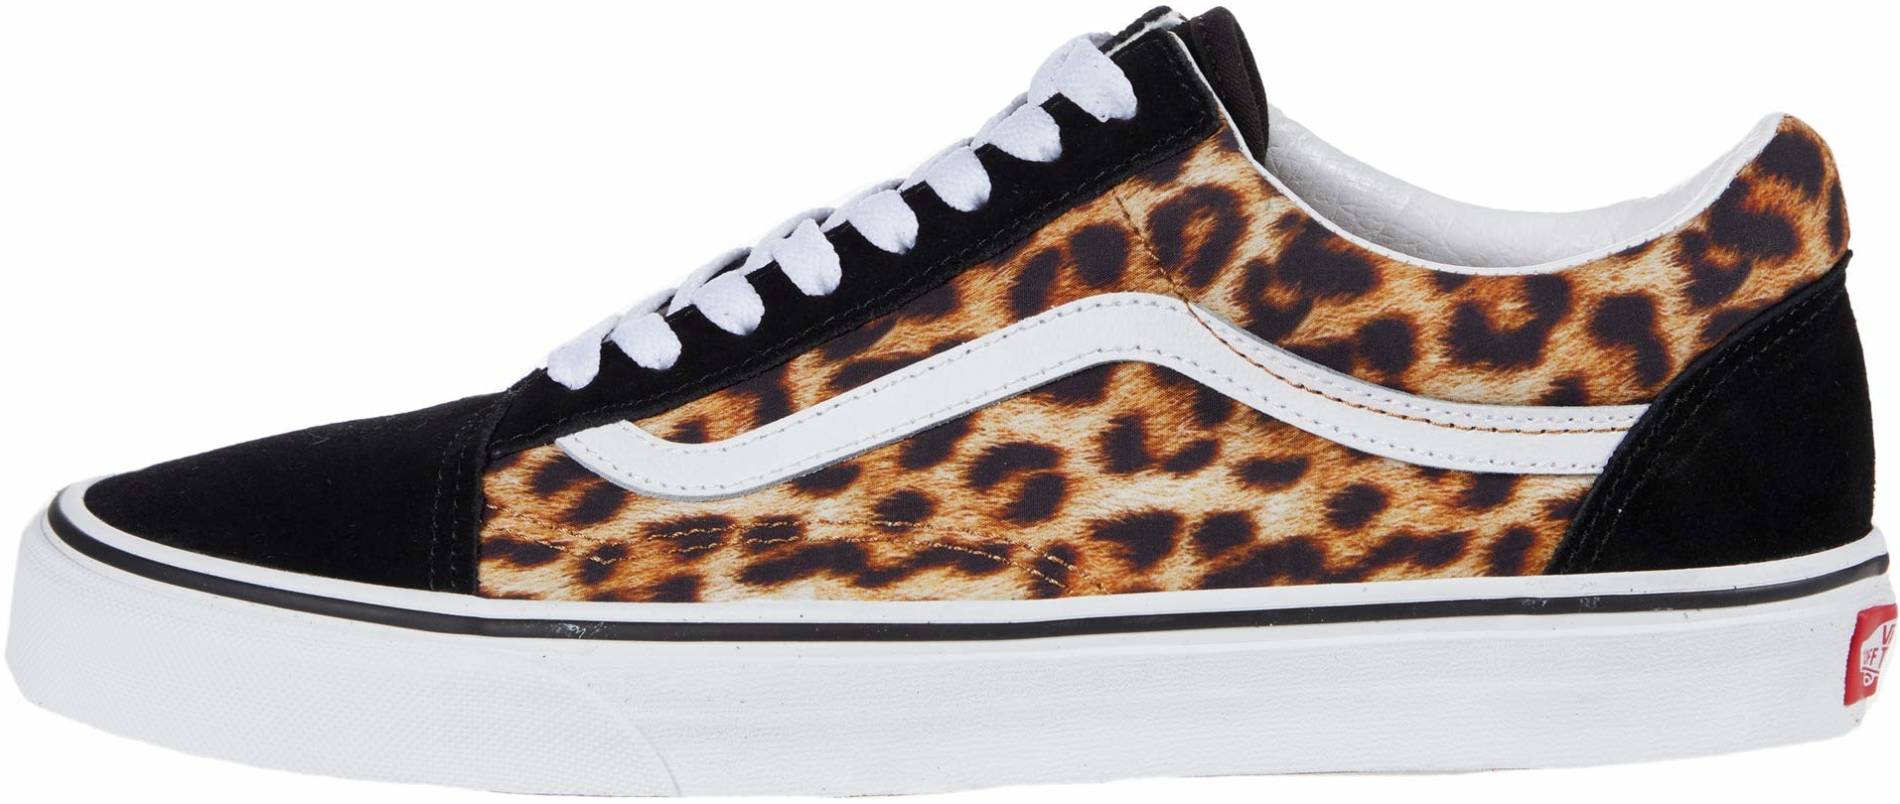 Vans Leopard Old Skool sneakers in 1 color | RunRepeat اطار خلفيات